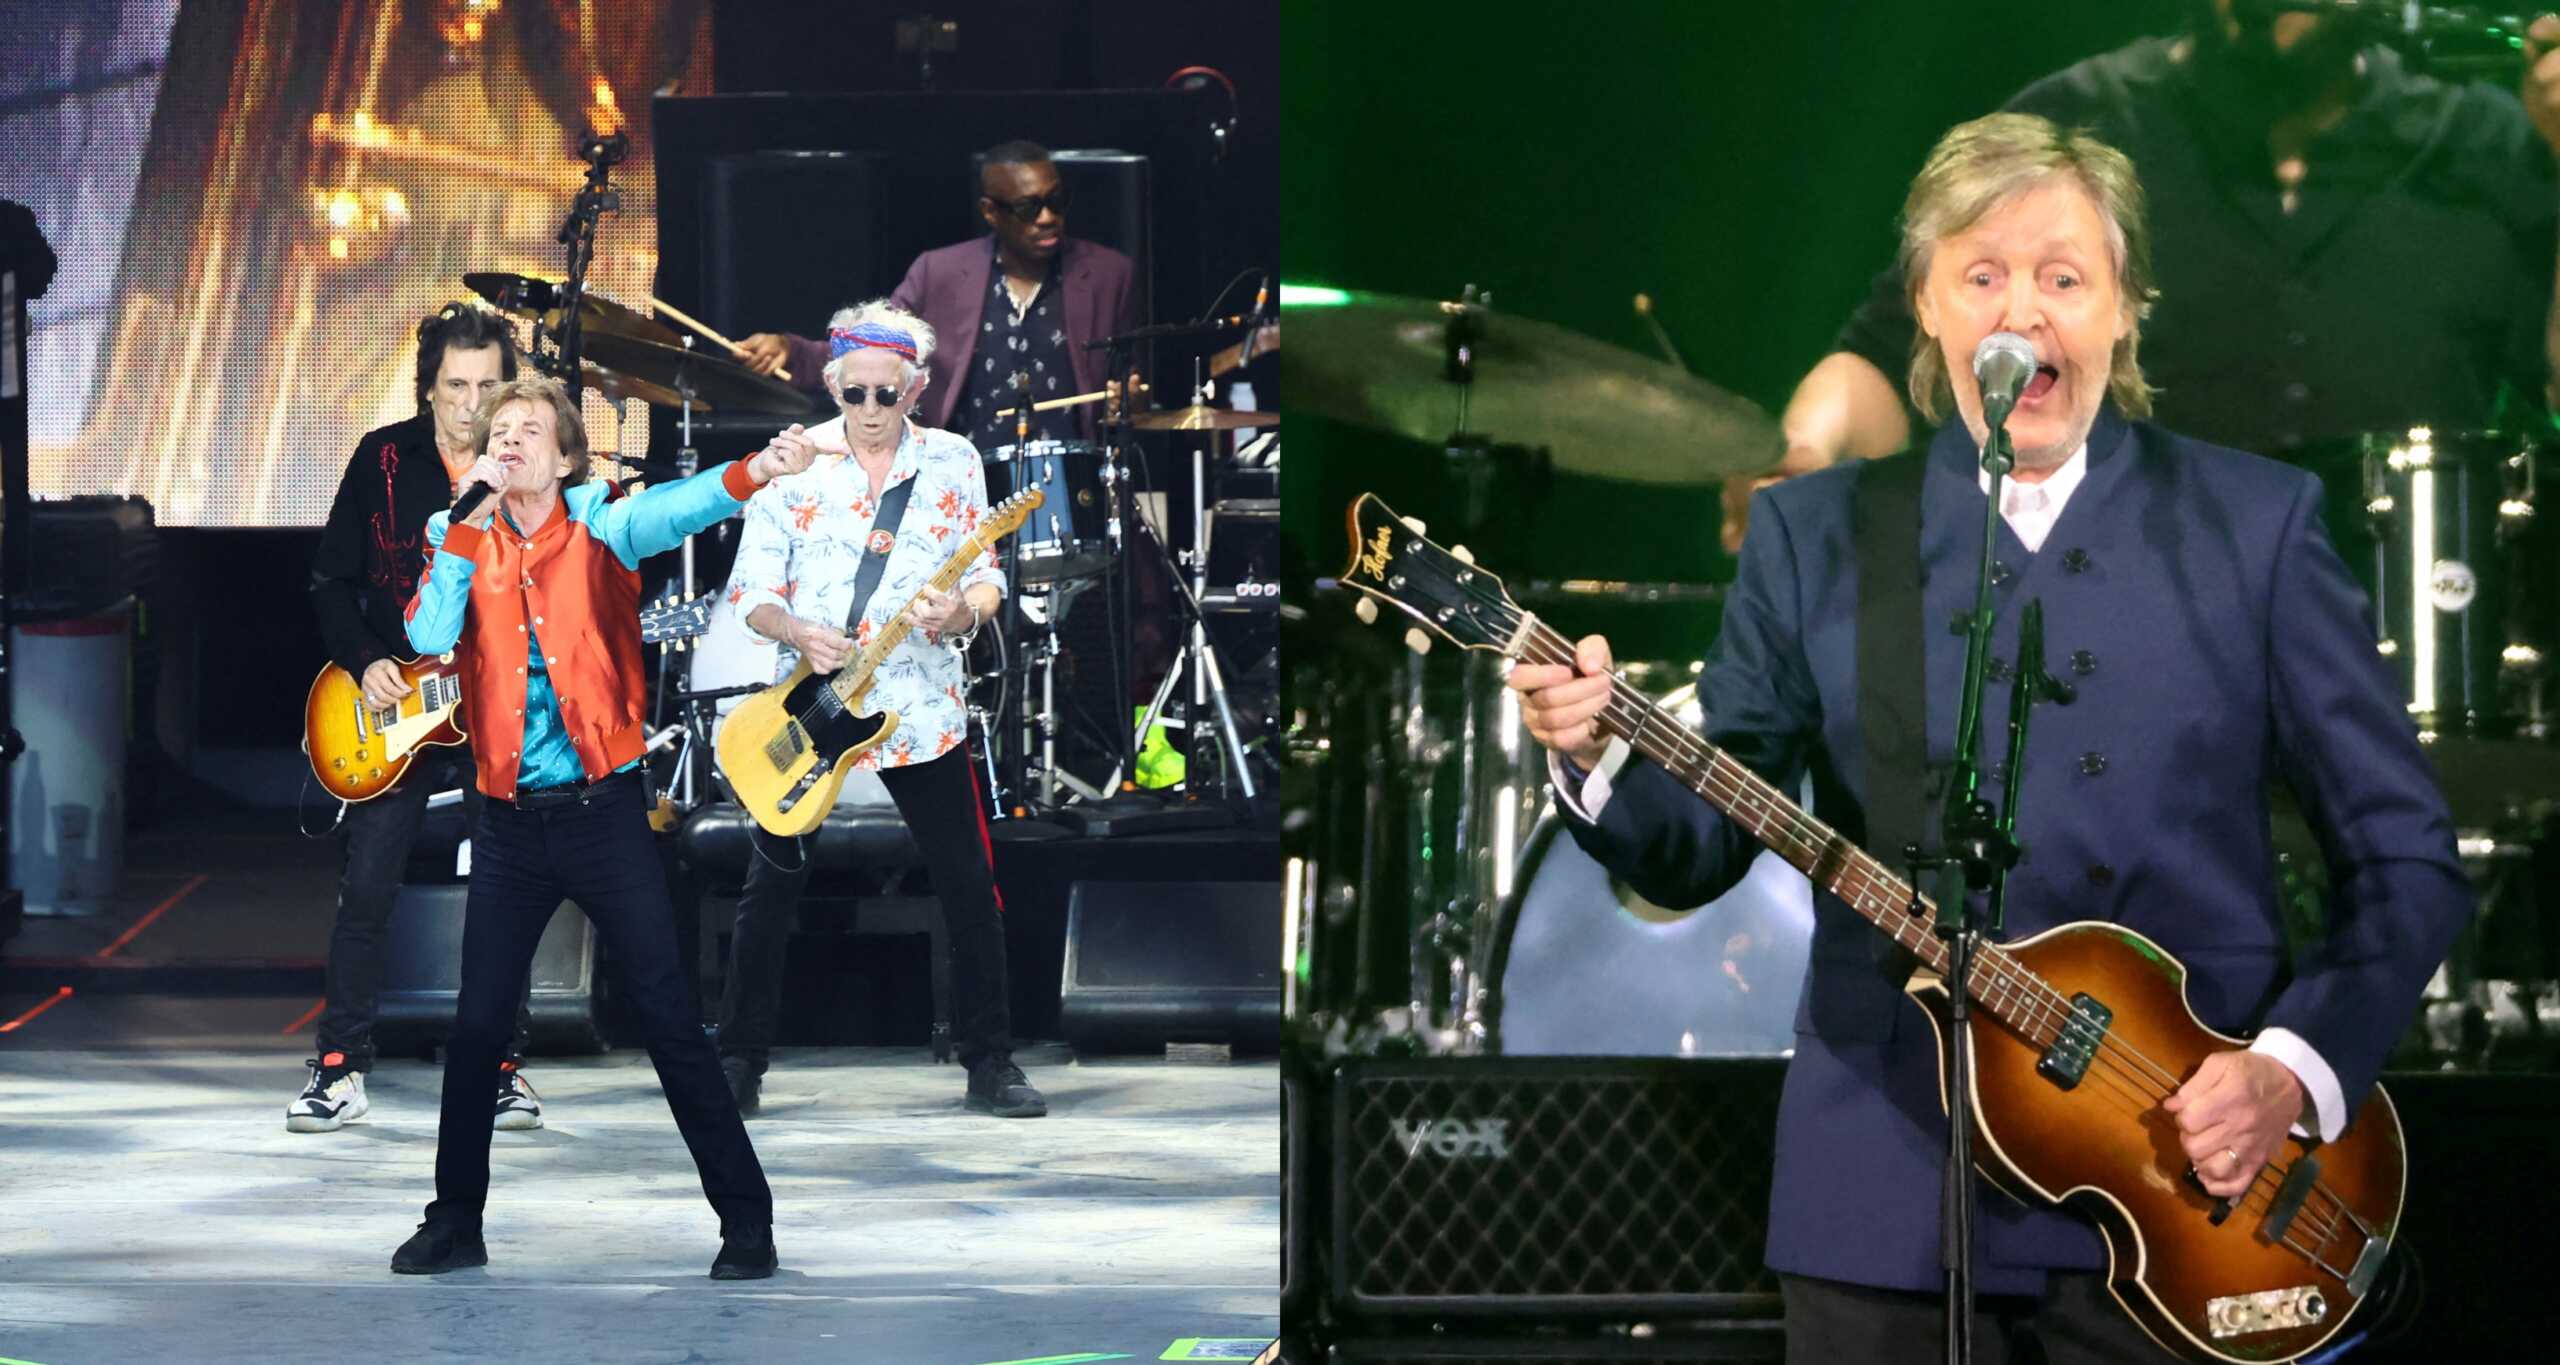 Ιστορική συνεργασία: Ο Πολ Μακάρτνεϊ των Beatles συμμετέχει στο νέο άλμπουμ των Rolling Stones